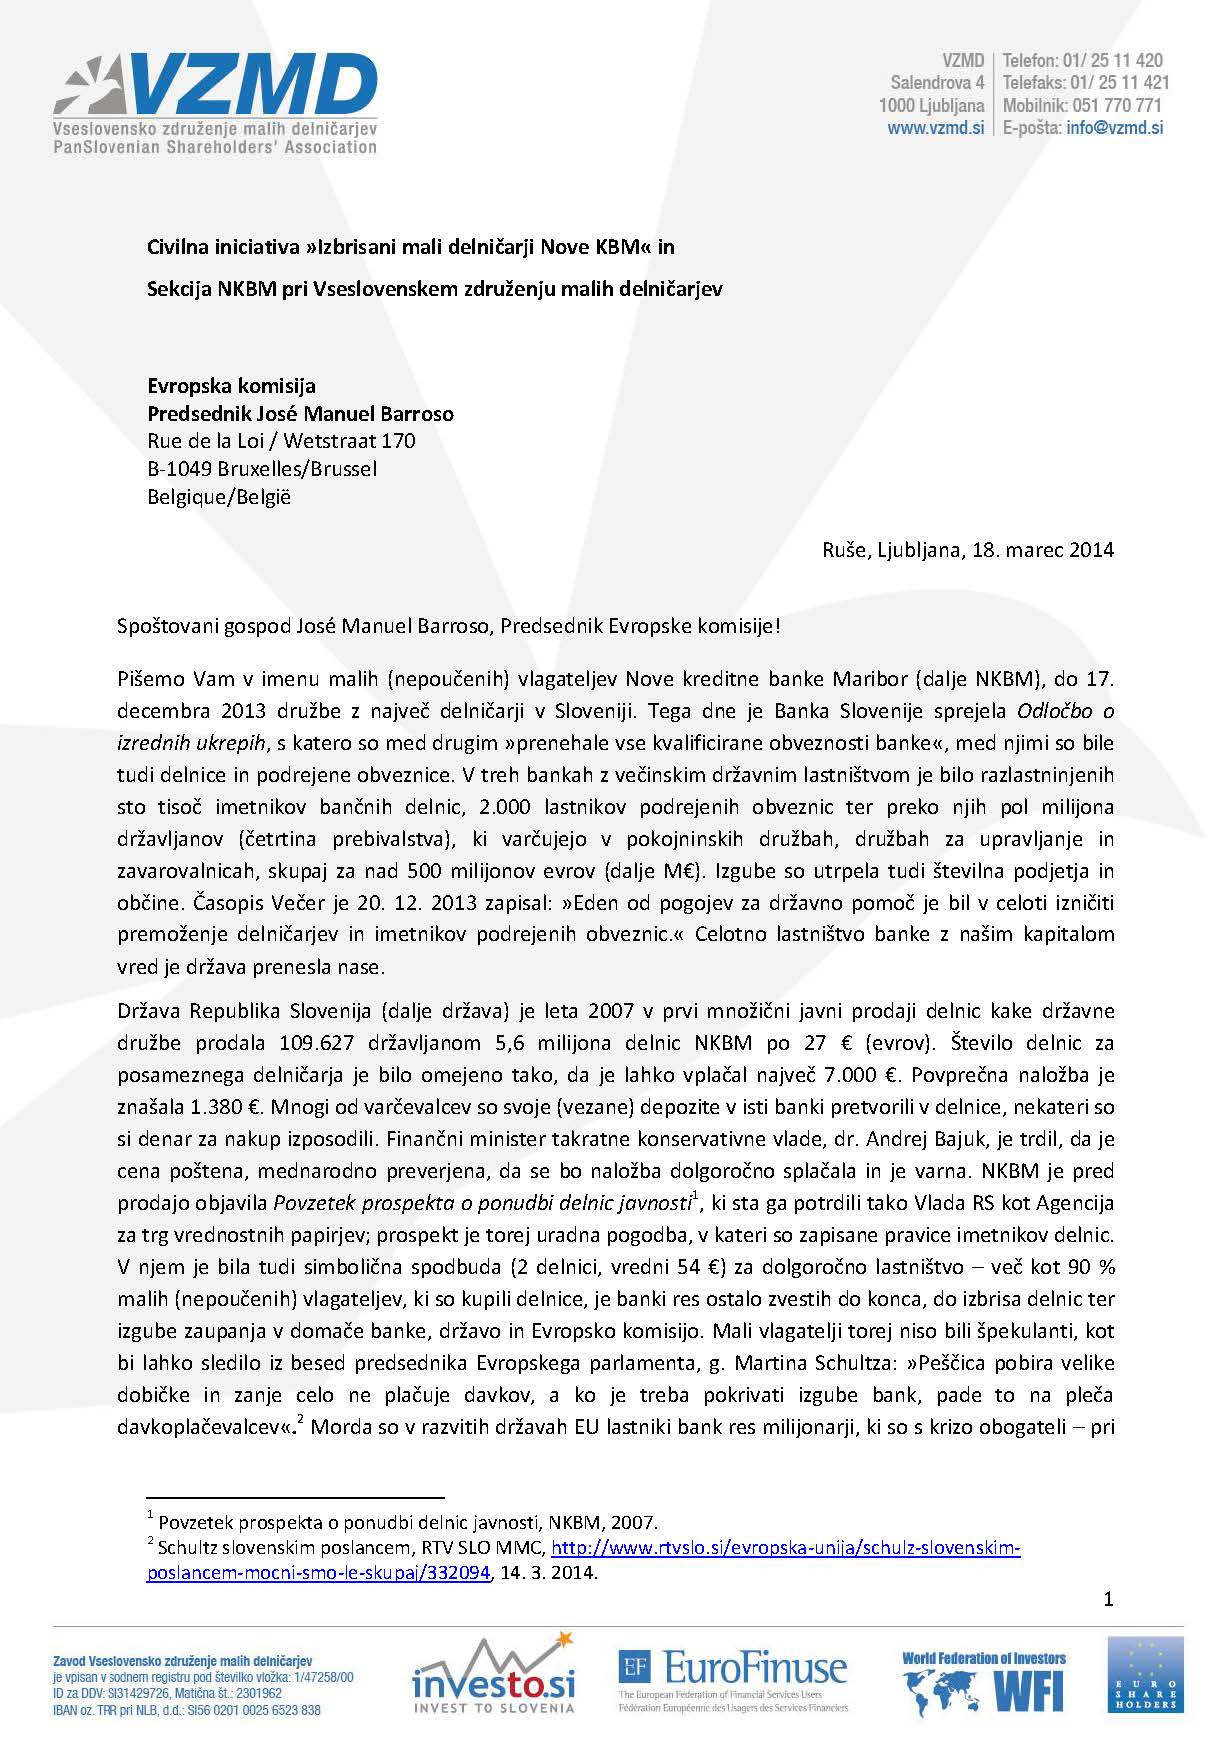 Pismo Civilne inciative izbrisani mali delnicarji Nove KBM in Sekcije NKBM pri VZMD predsedniku Evropskega parlamenta Page_1